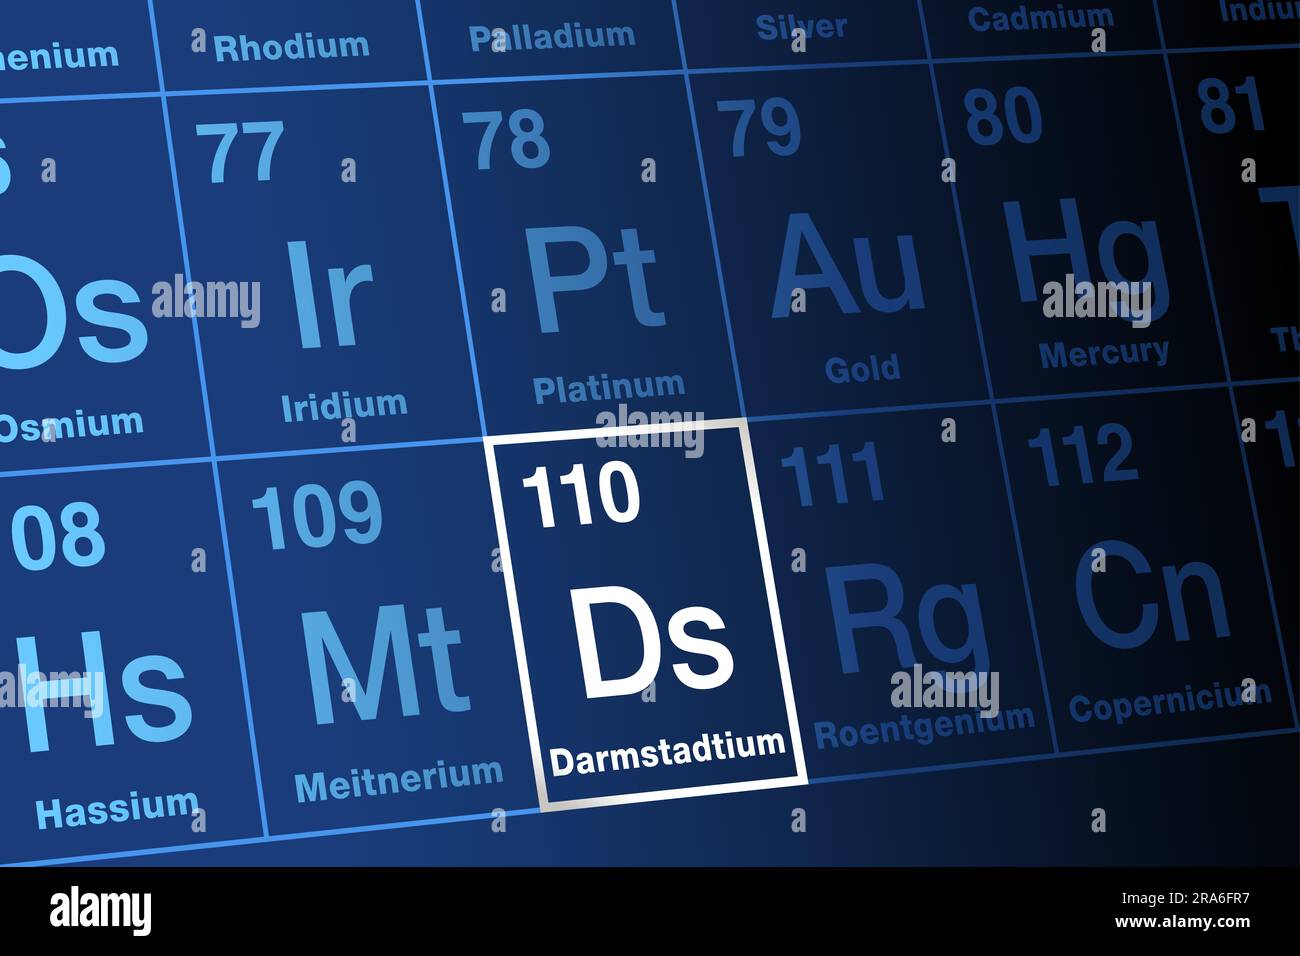 Darmstadtium, auf dem Periodensystem. Extrem radioaktives, superschweres, synthetisches Transaktinid-Element, mit Elementsymbol D und Atomzahl 110. Stockfoto